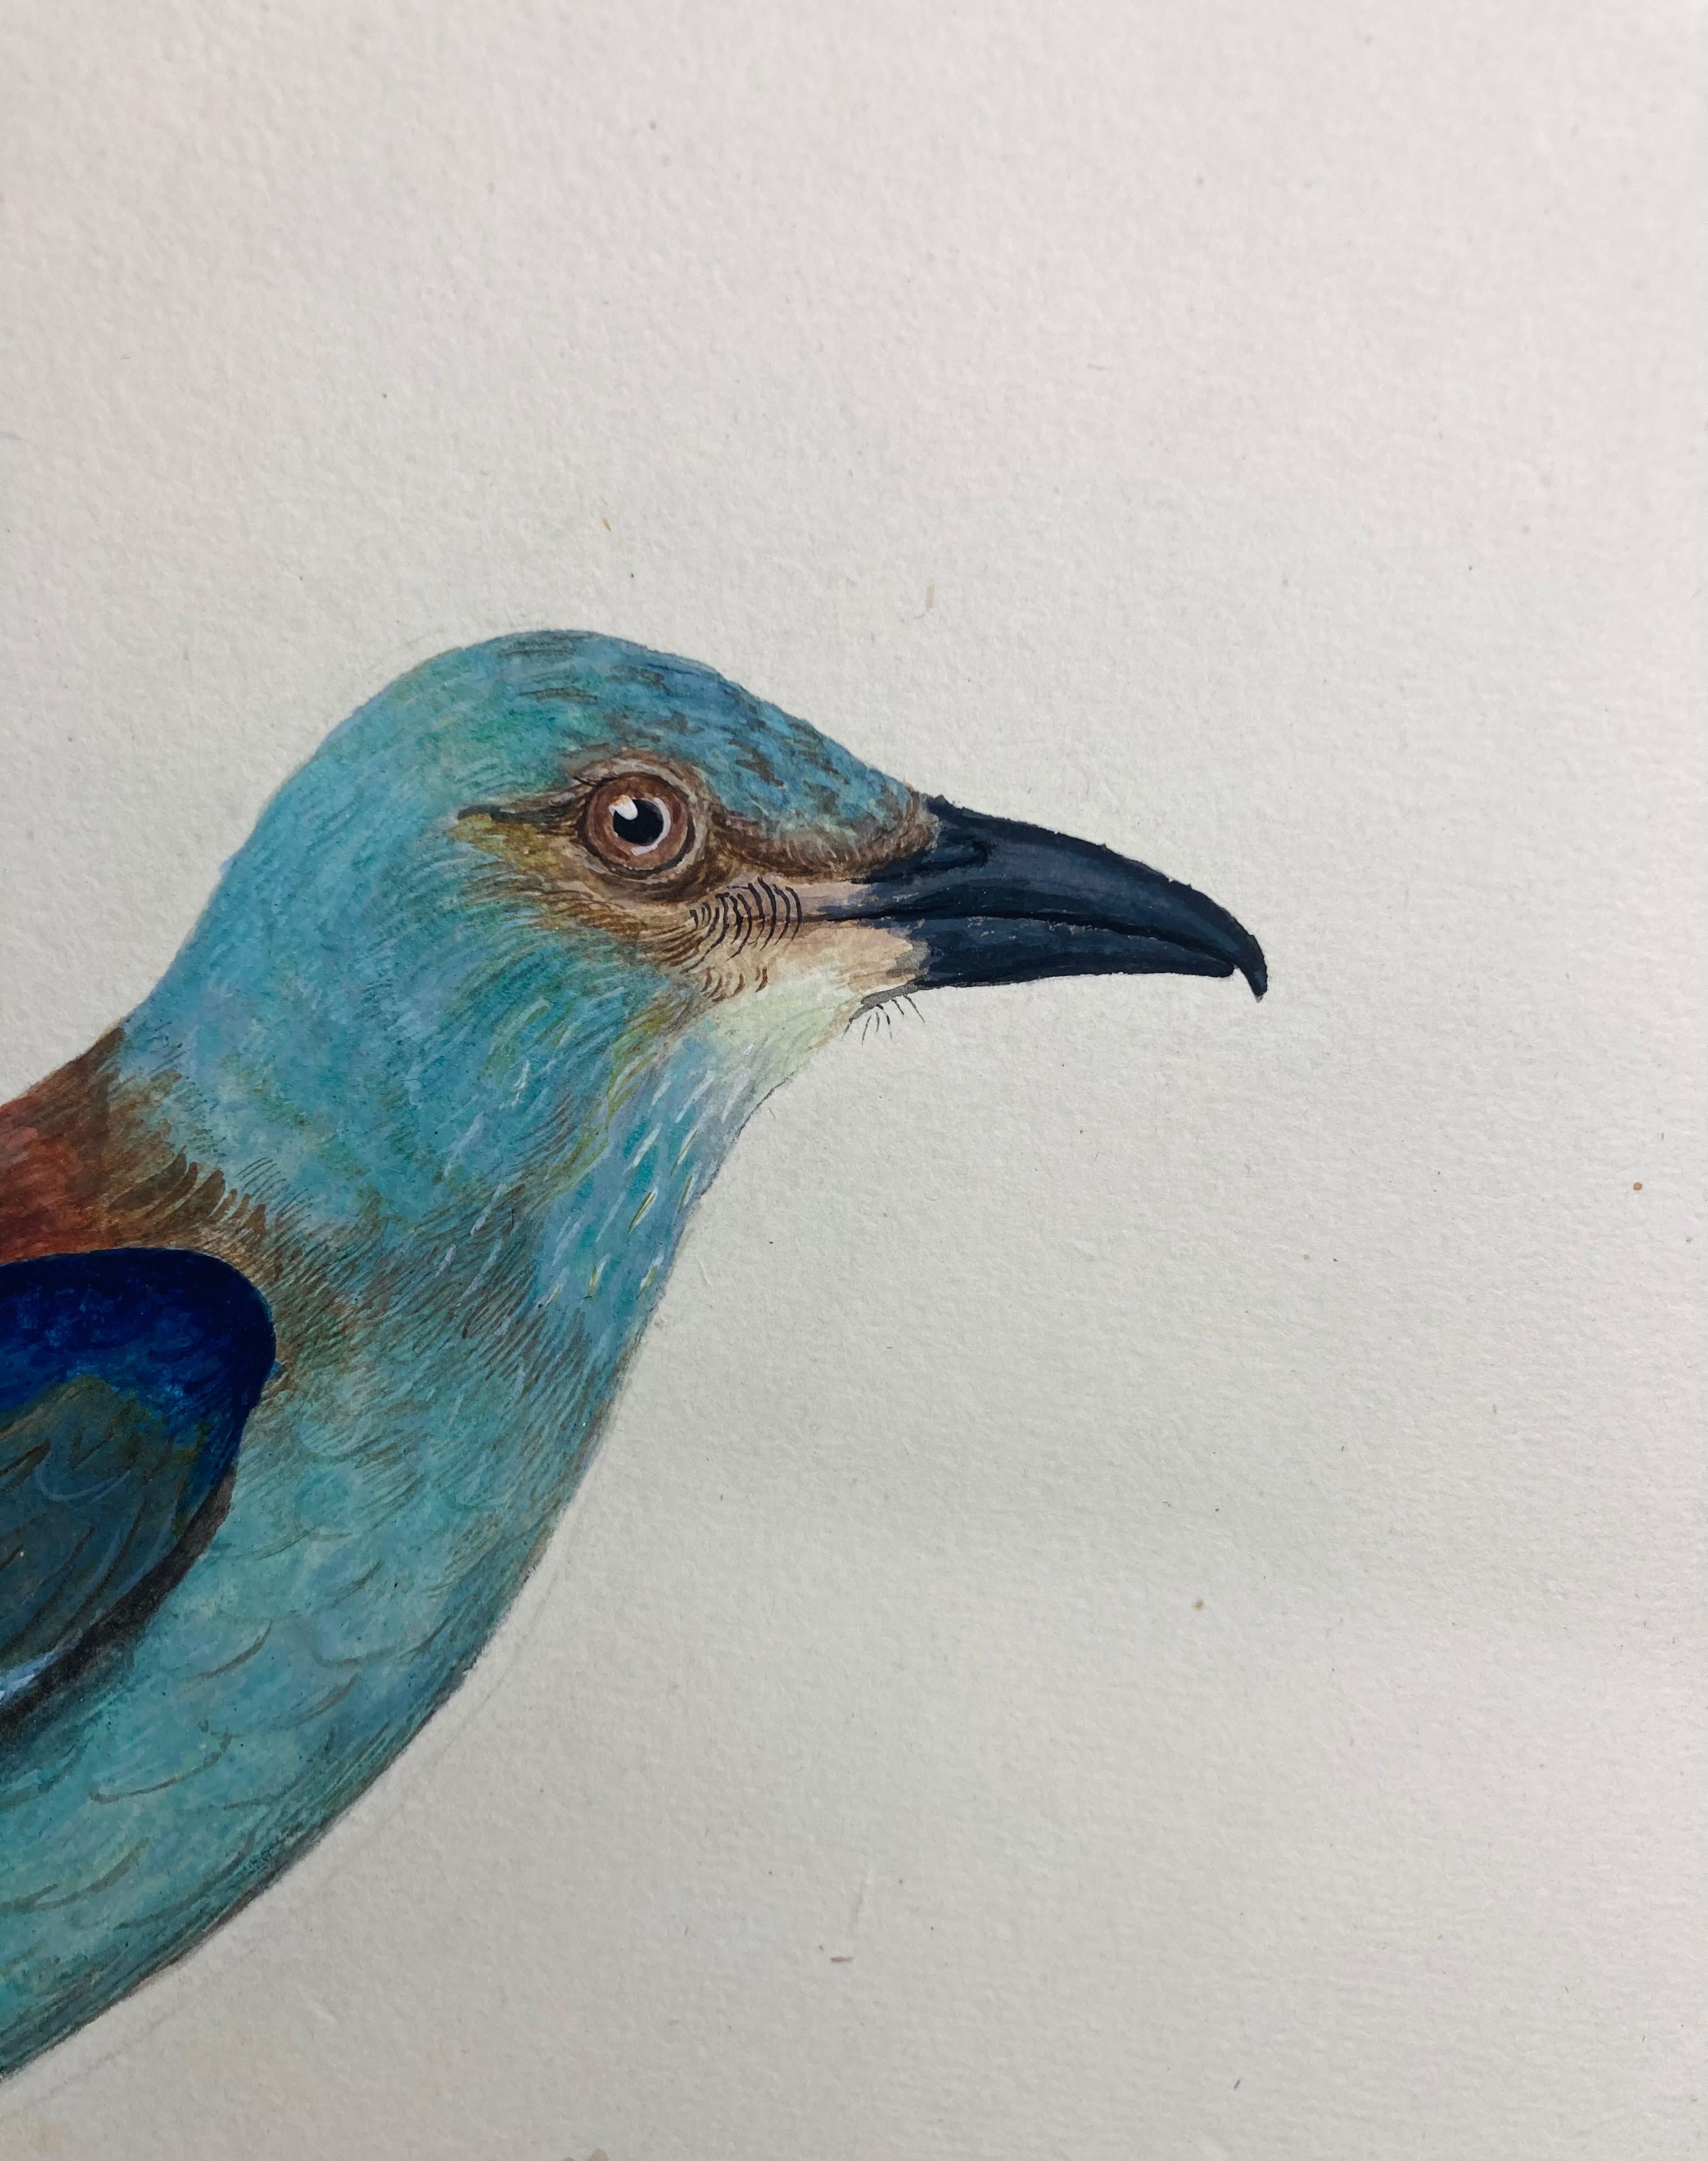 Wildleben-Zeichnung eines jayischen Vogels in Hellblau von einem erleuchteten britischen Maler – Art von Peter Paillou